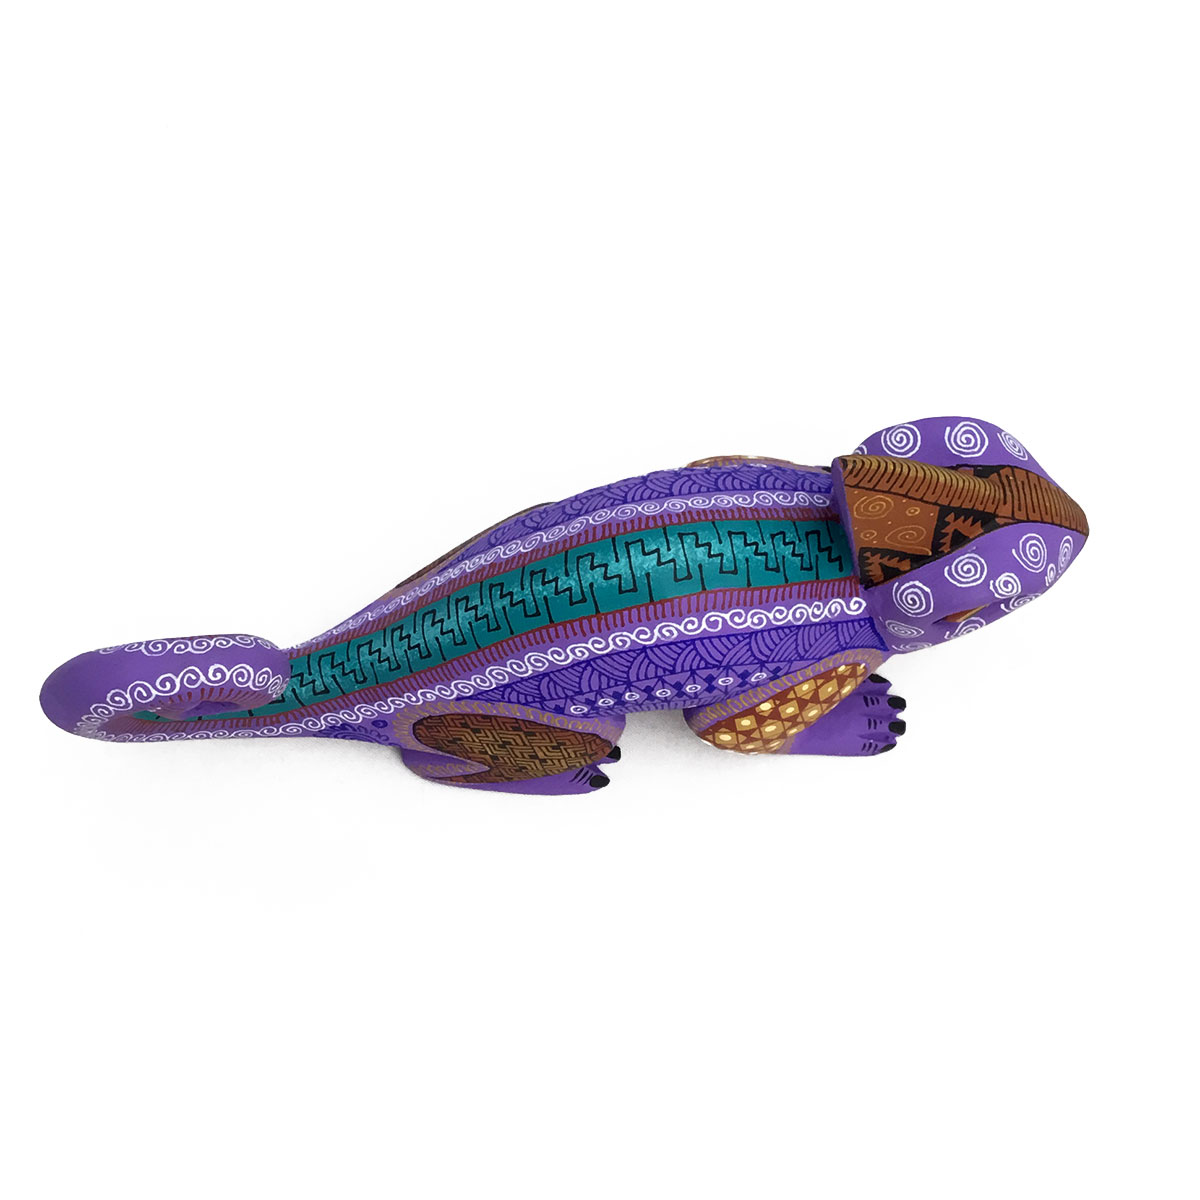 Abundio Munoz Abundio Munoz: Purple Chameleon Alebrijes